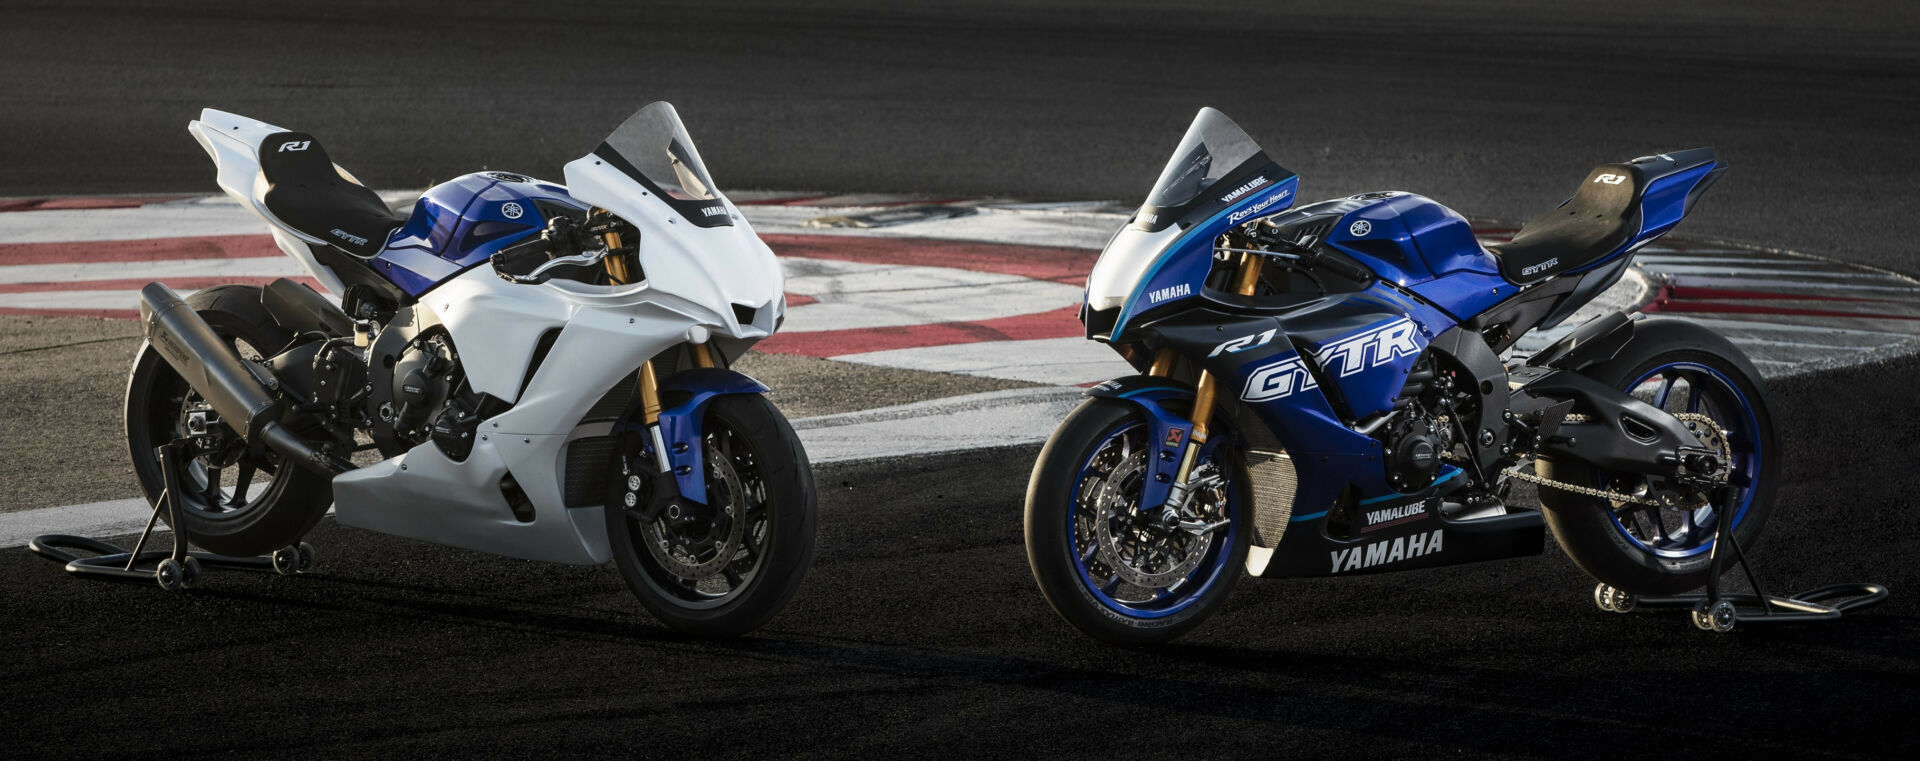 Yamaha R1 - Race Experience School